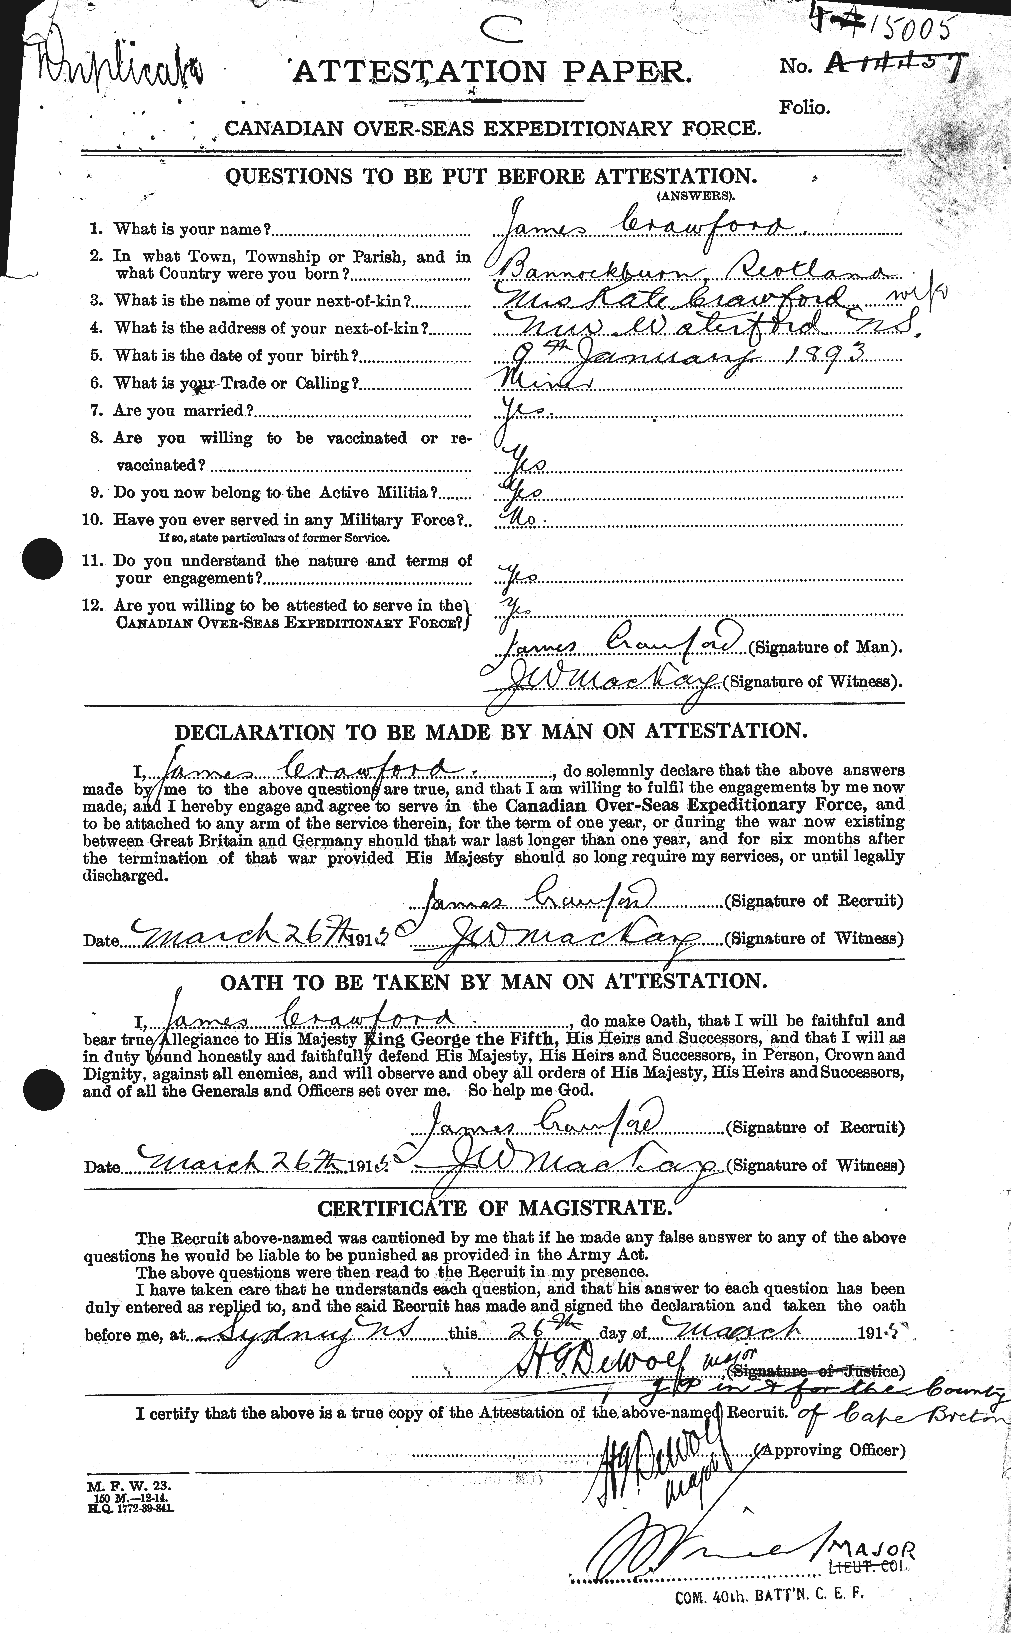 Dossiers du Personnel de la Première Guerre mondiale - CEC 062774a